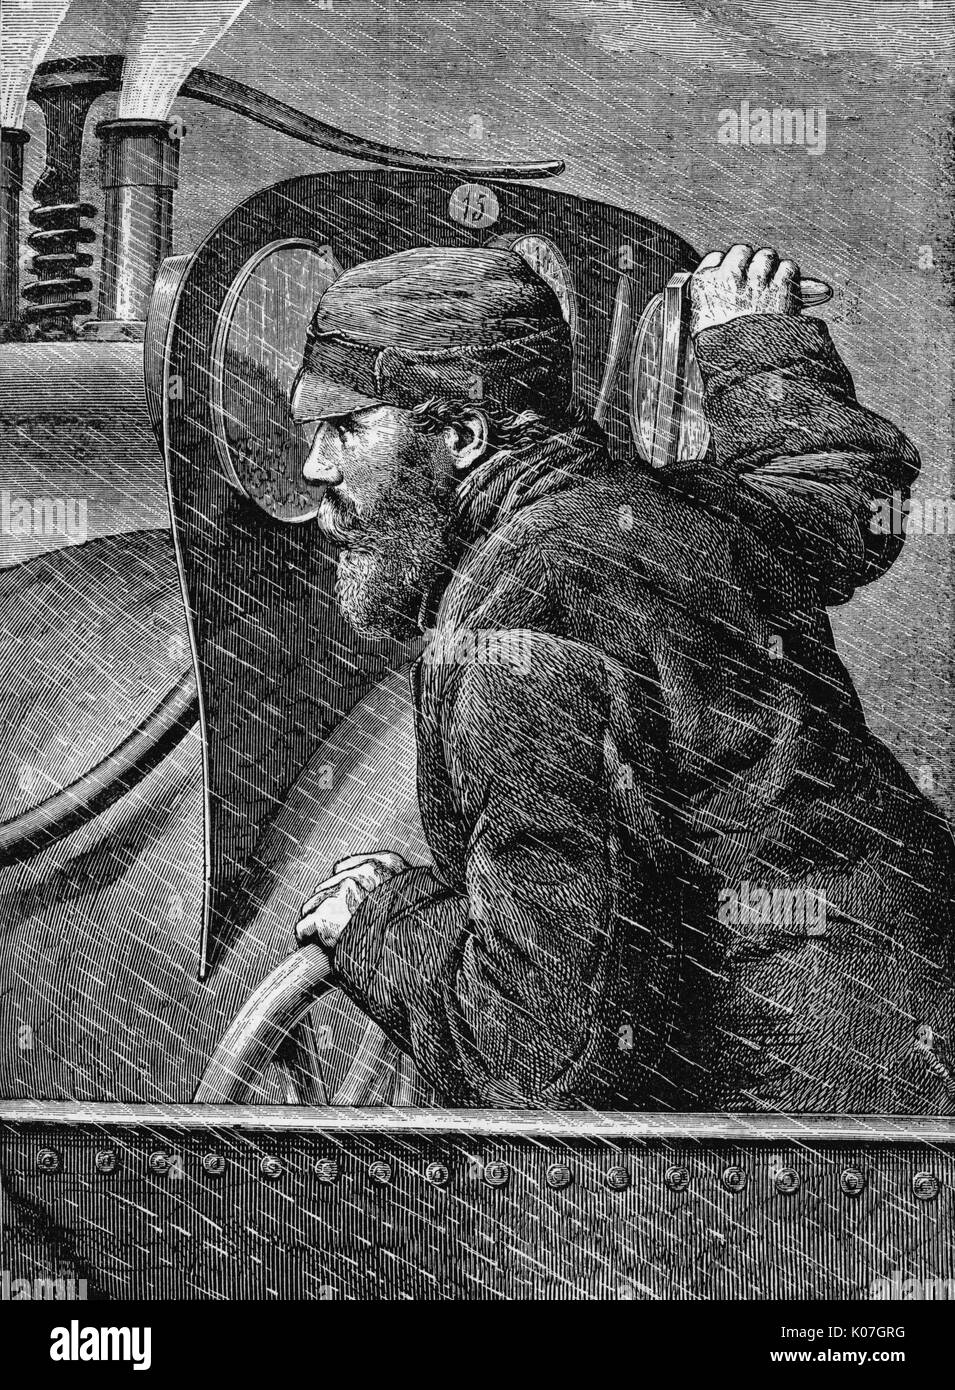 El conductor compañeros por delante de su pala abierta que sólo le da la mínima protección de la lluvia y el viento, nieve y granizo. Fecha: 1888 Foto de stock